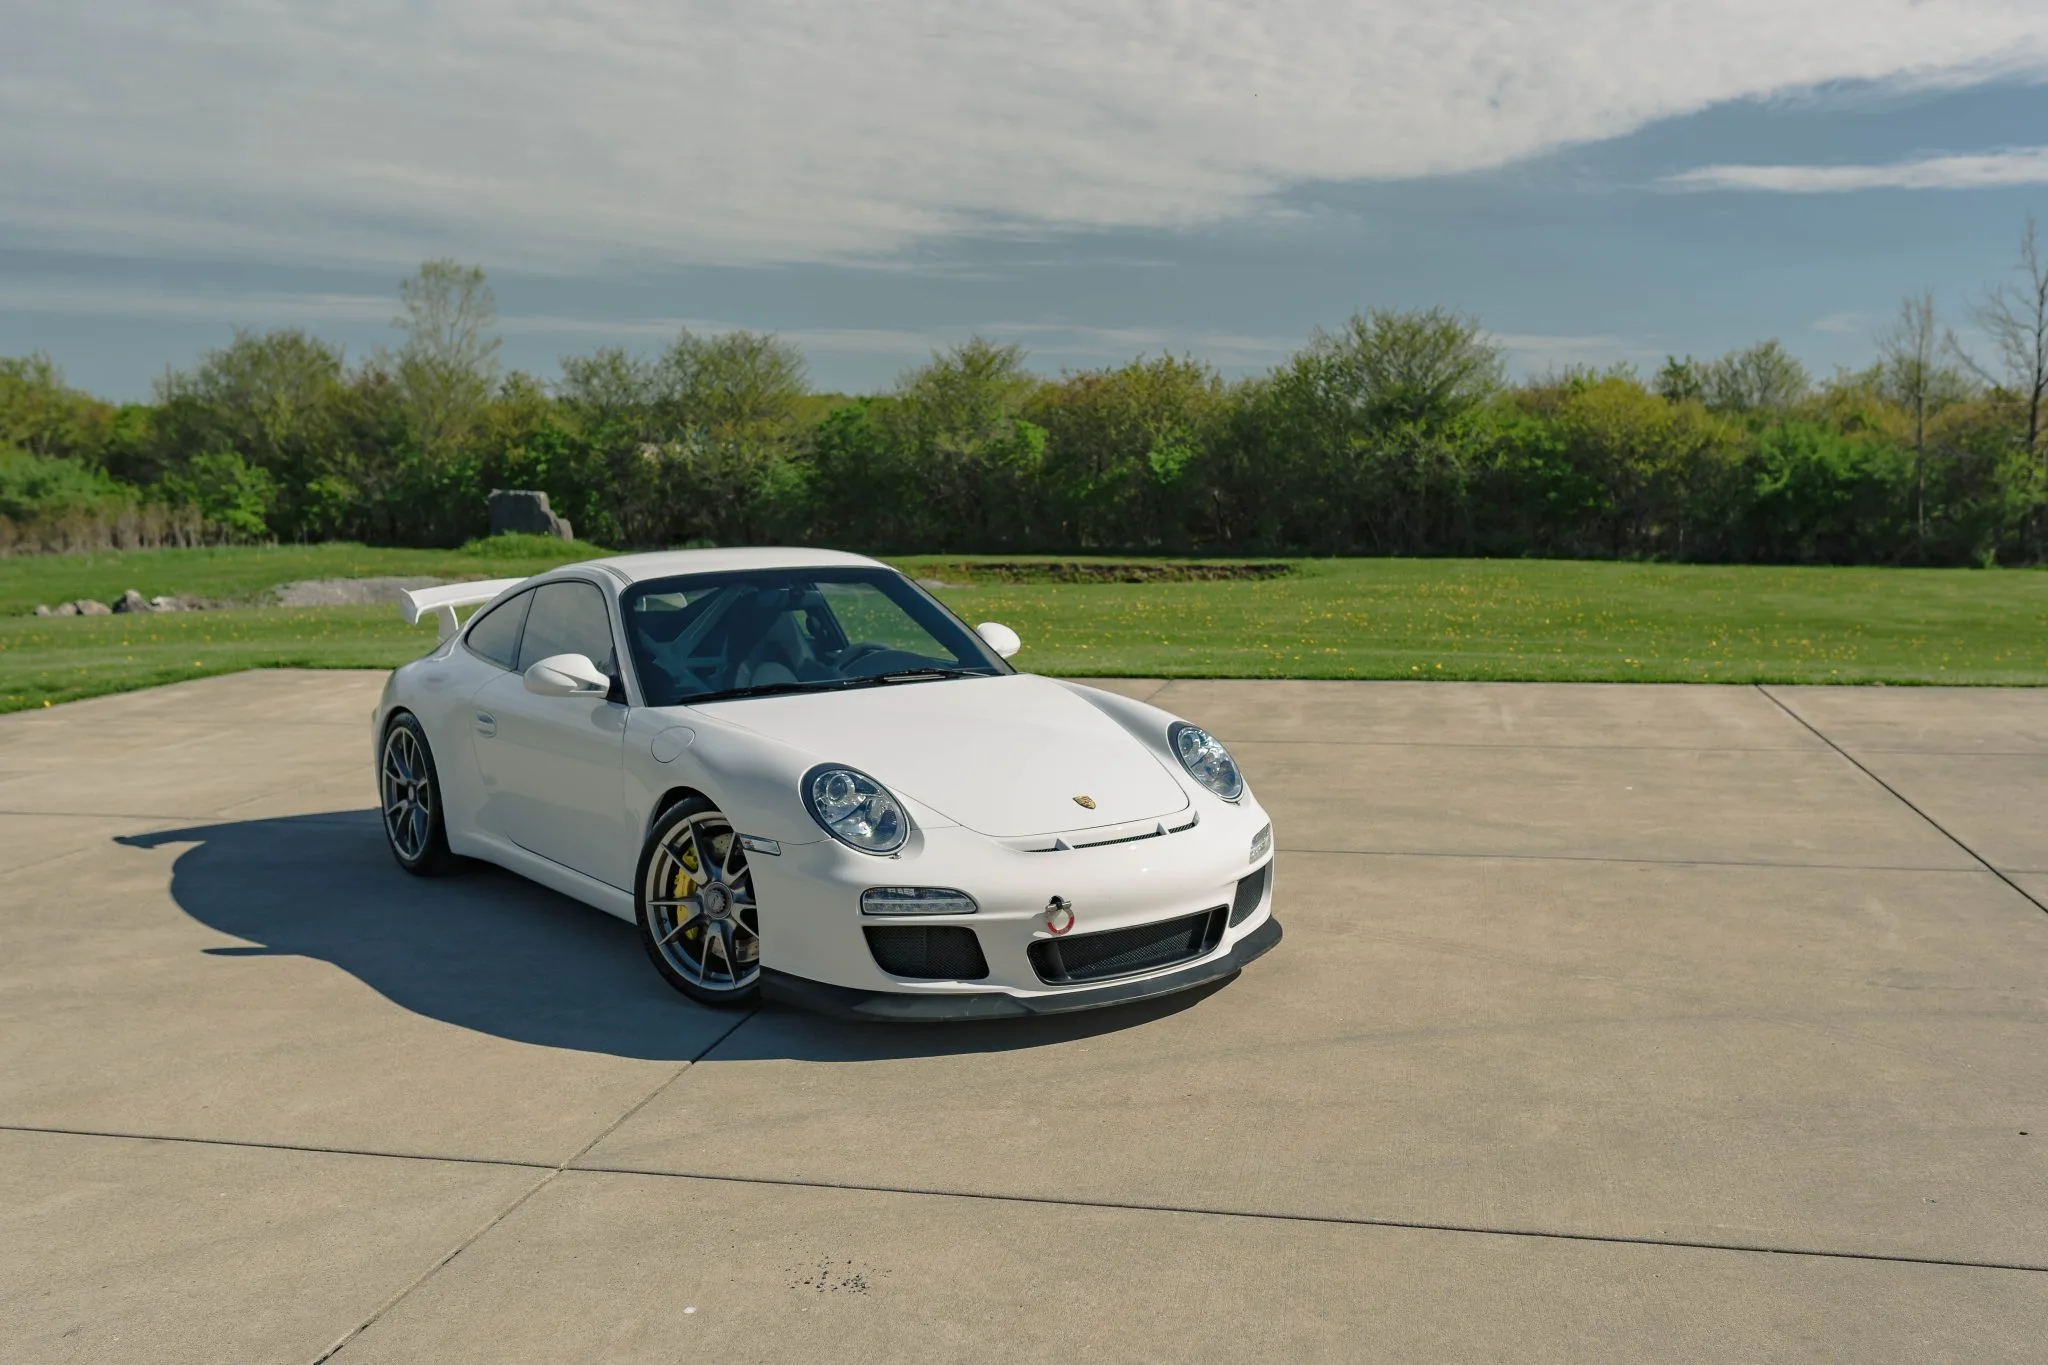 For Sale: 2010 Porsche 911 GT3 In Carrera White